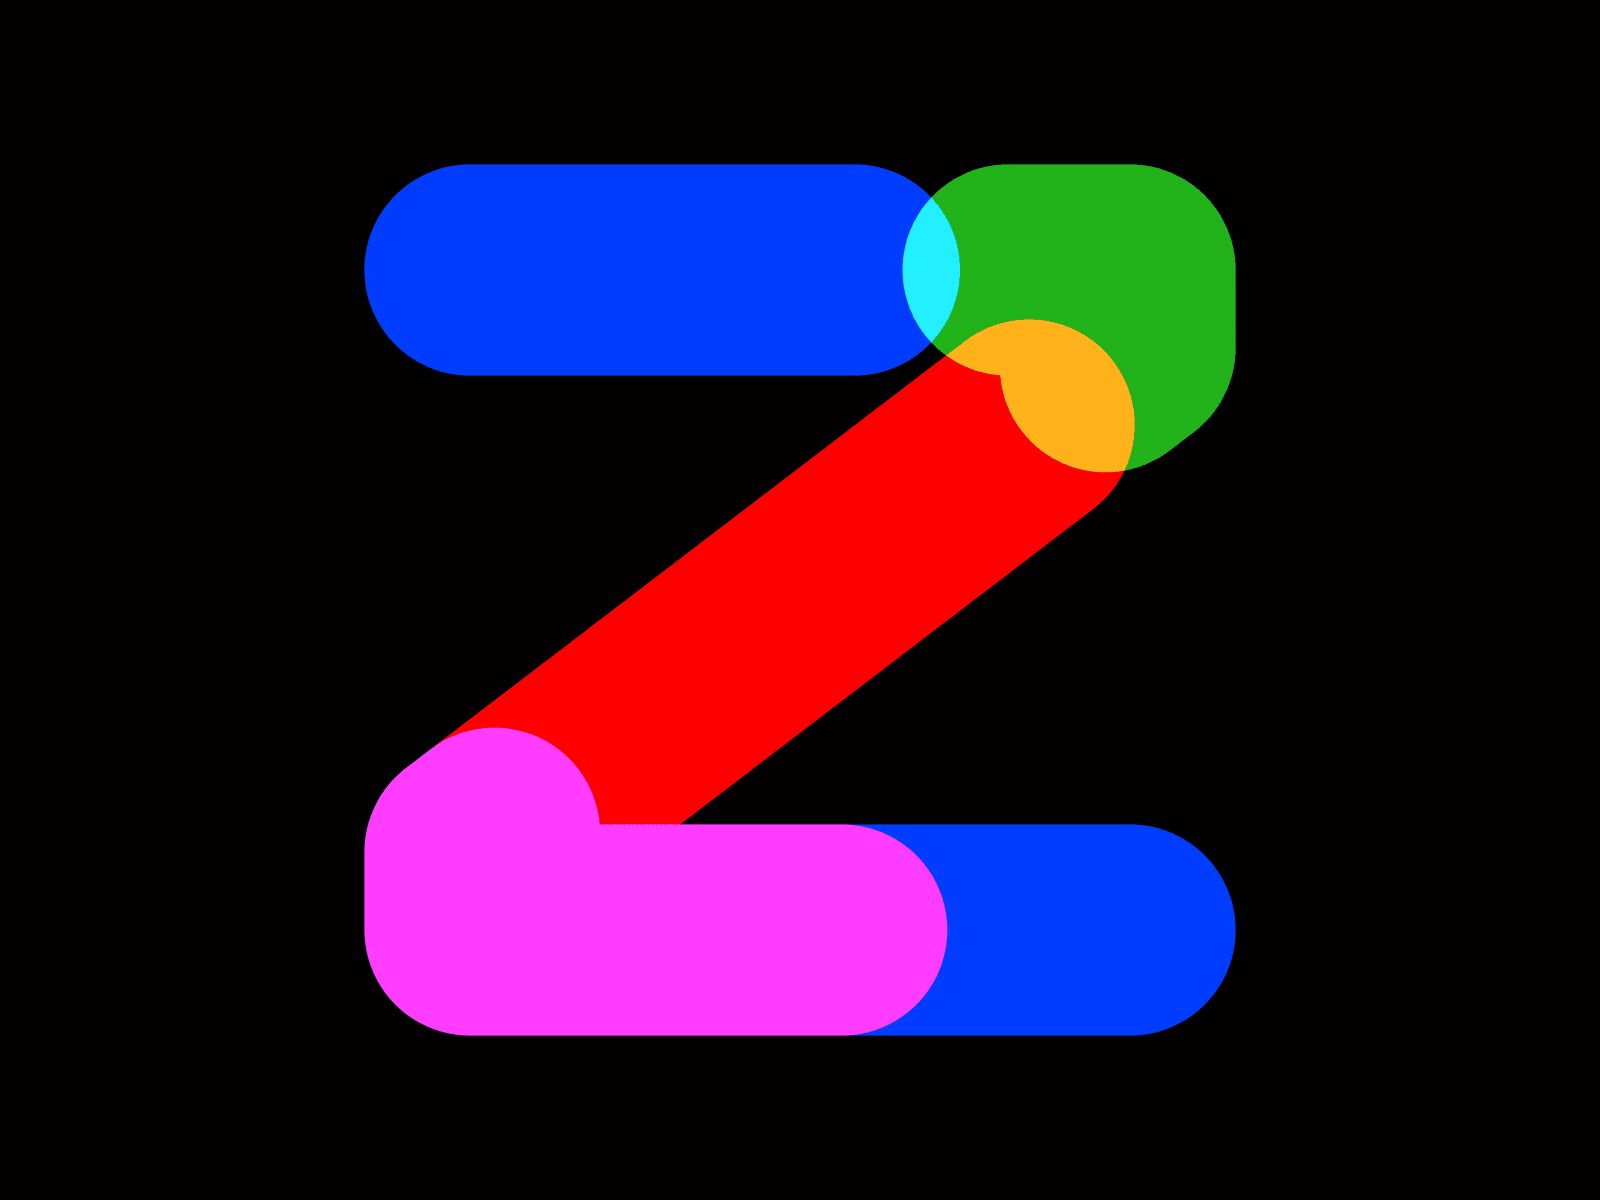 36 Days of Type 2021 - Z